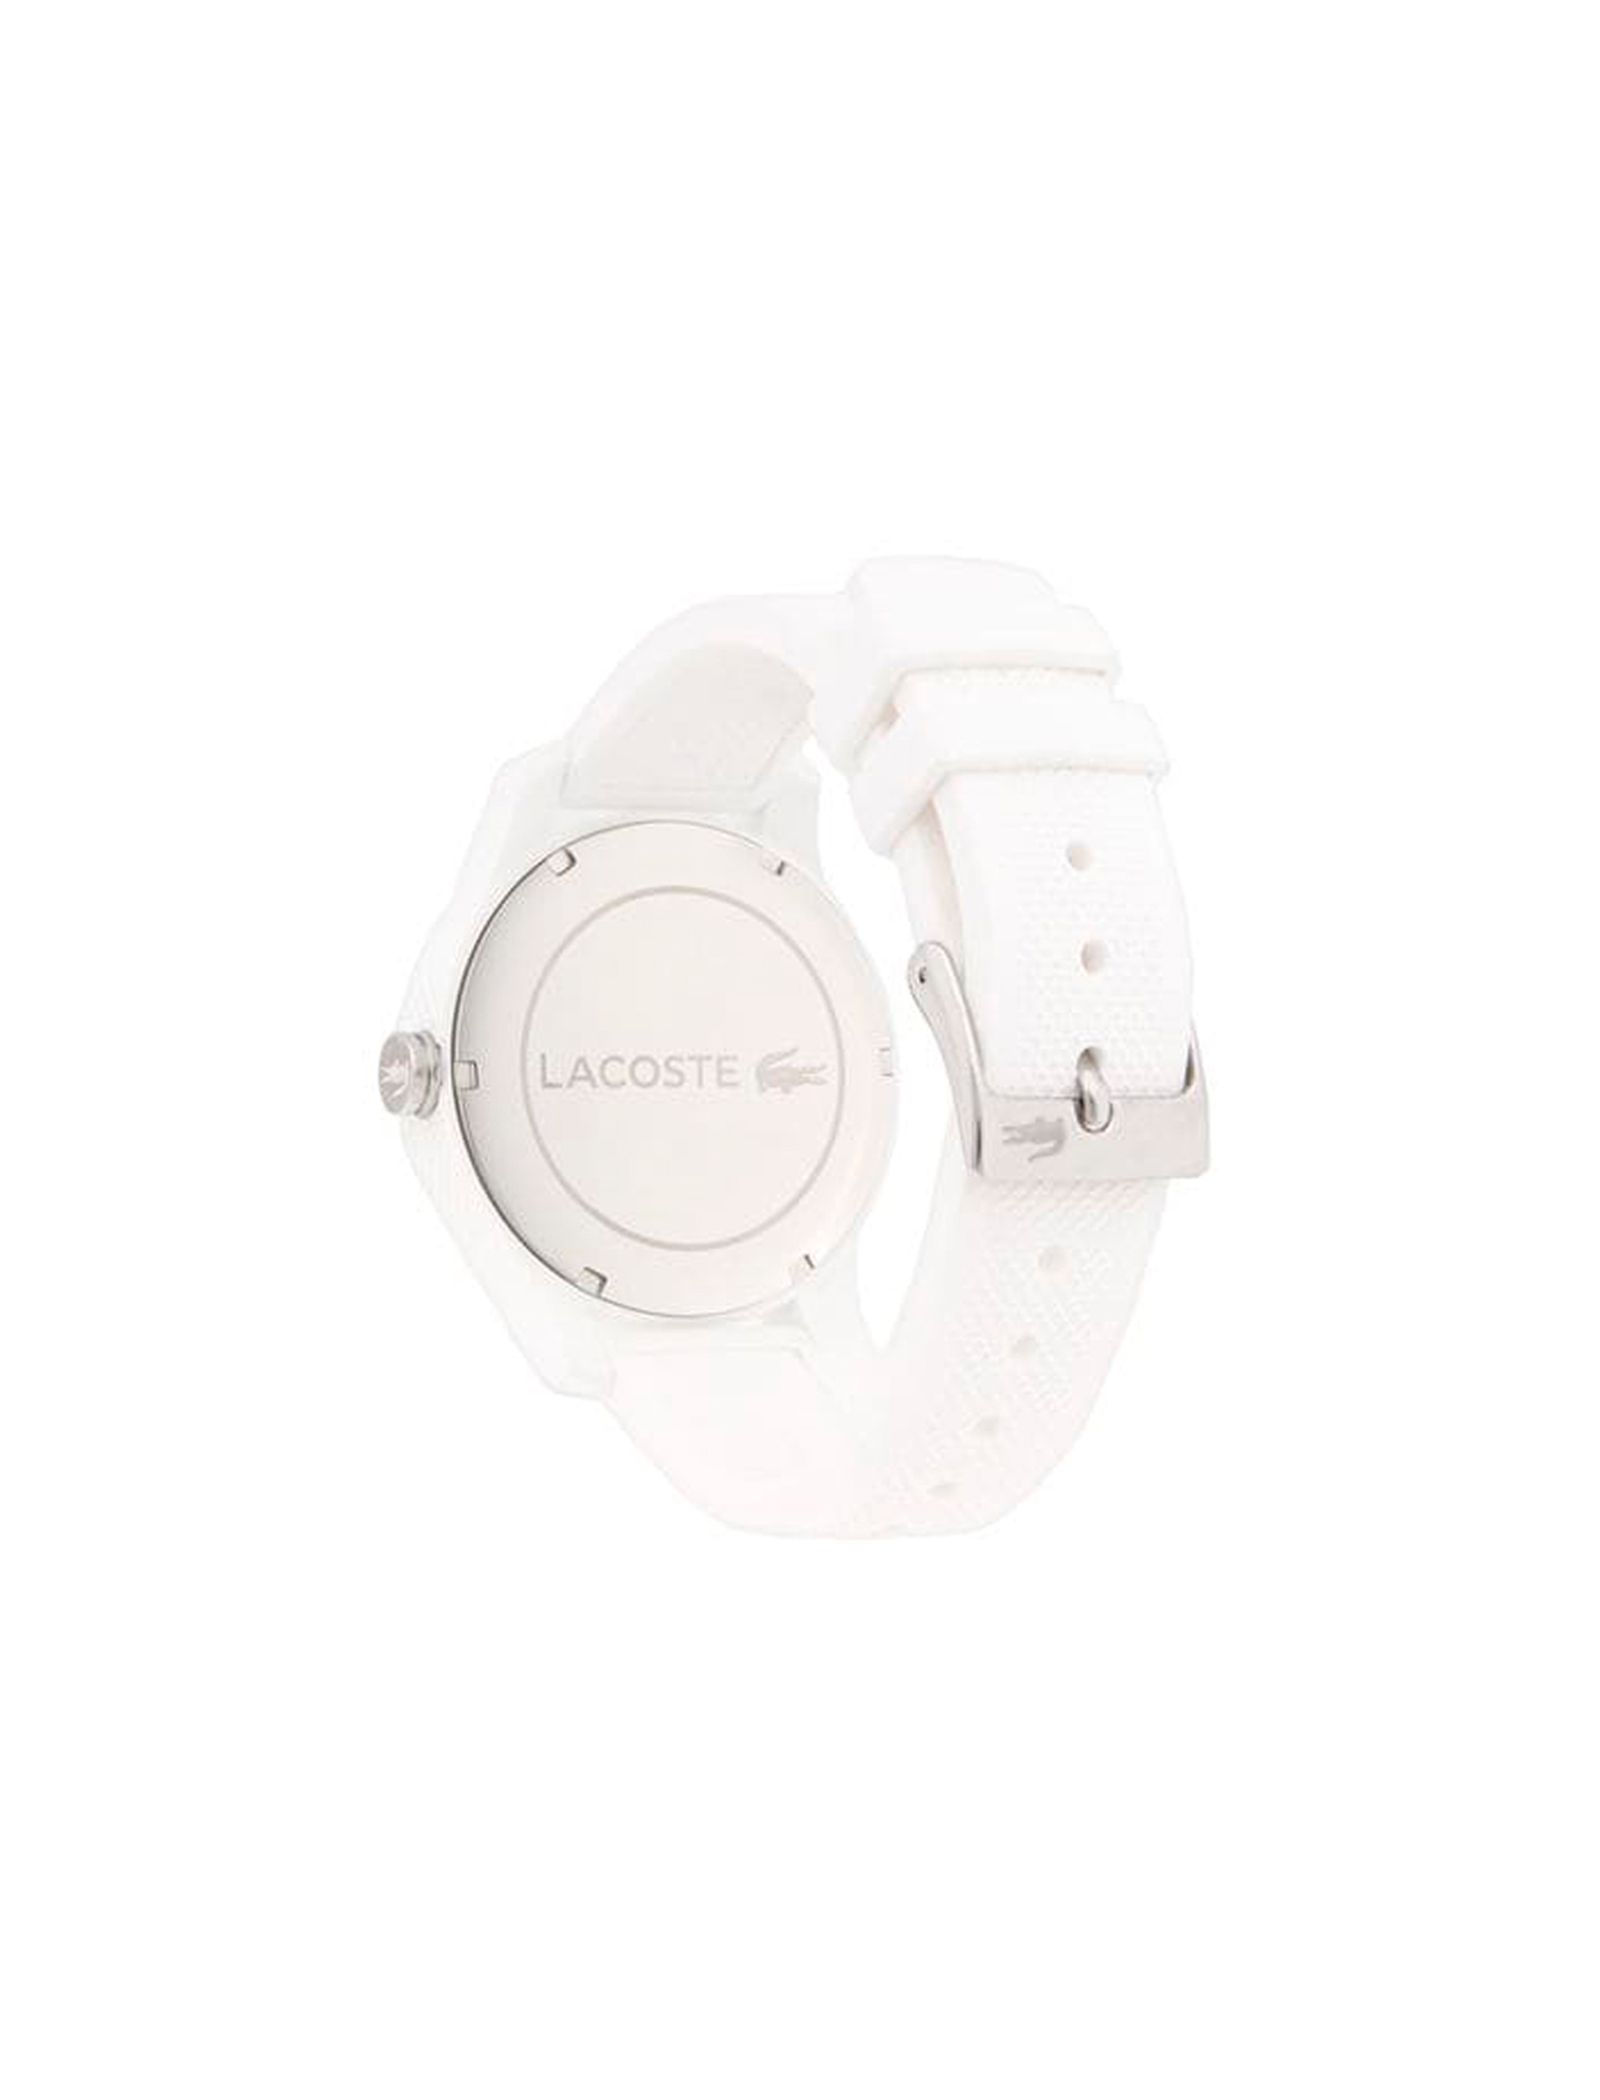 ساعت مچی عقربه ای لاگوست مدل 2010762 - سفید - 4